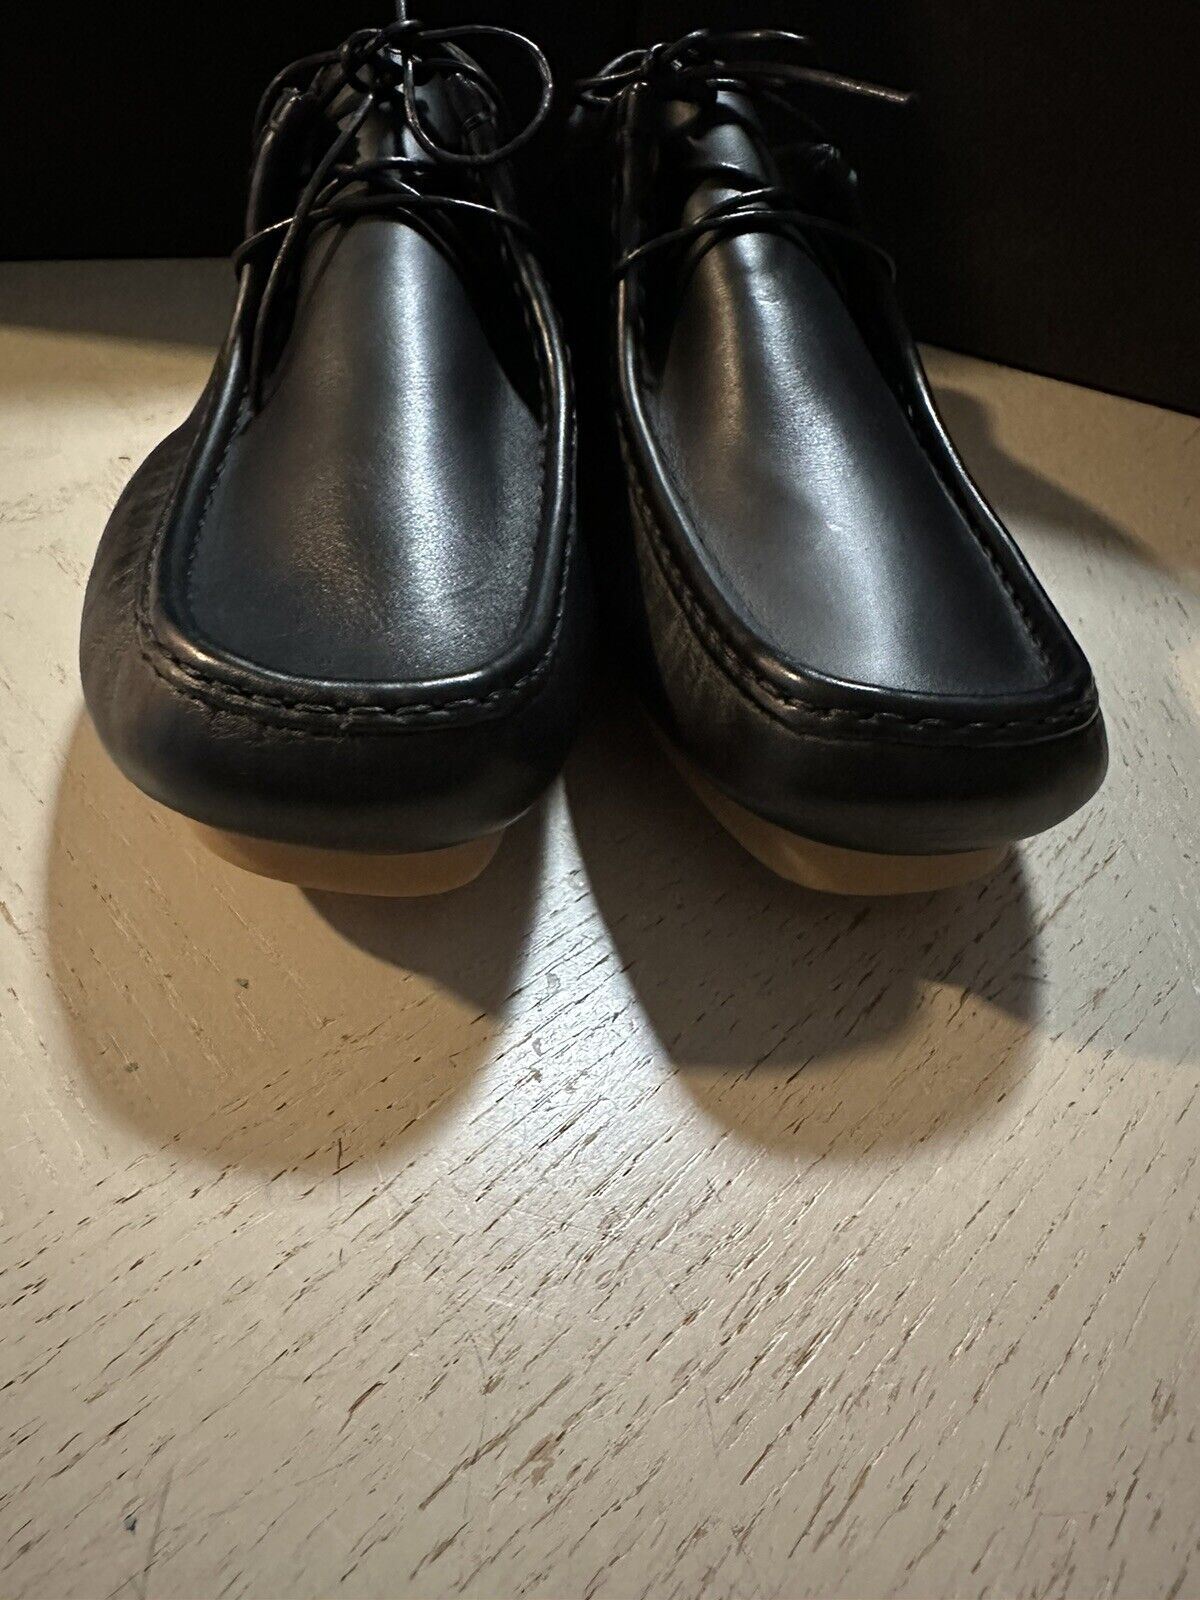 Новые мужские кожаные лоферы Bottega Venetta за 760 долларов, черные 11 US/44 EU